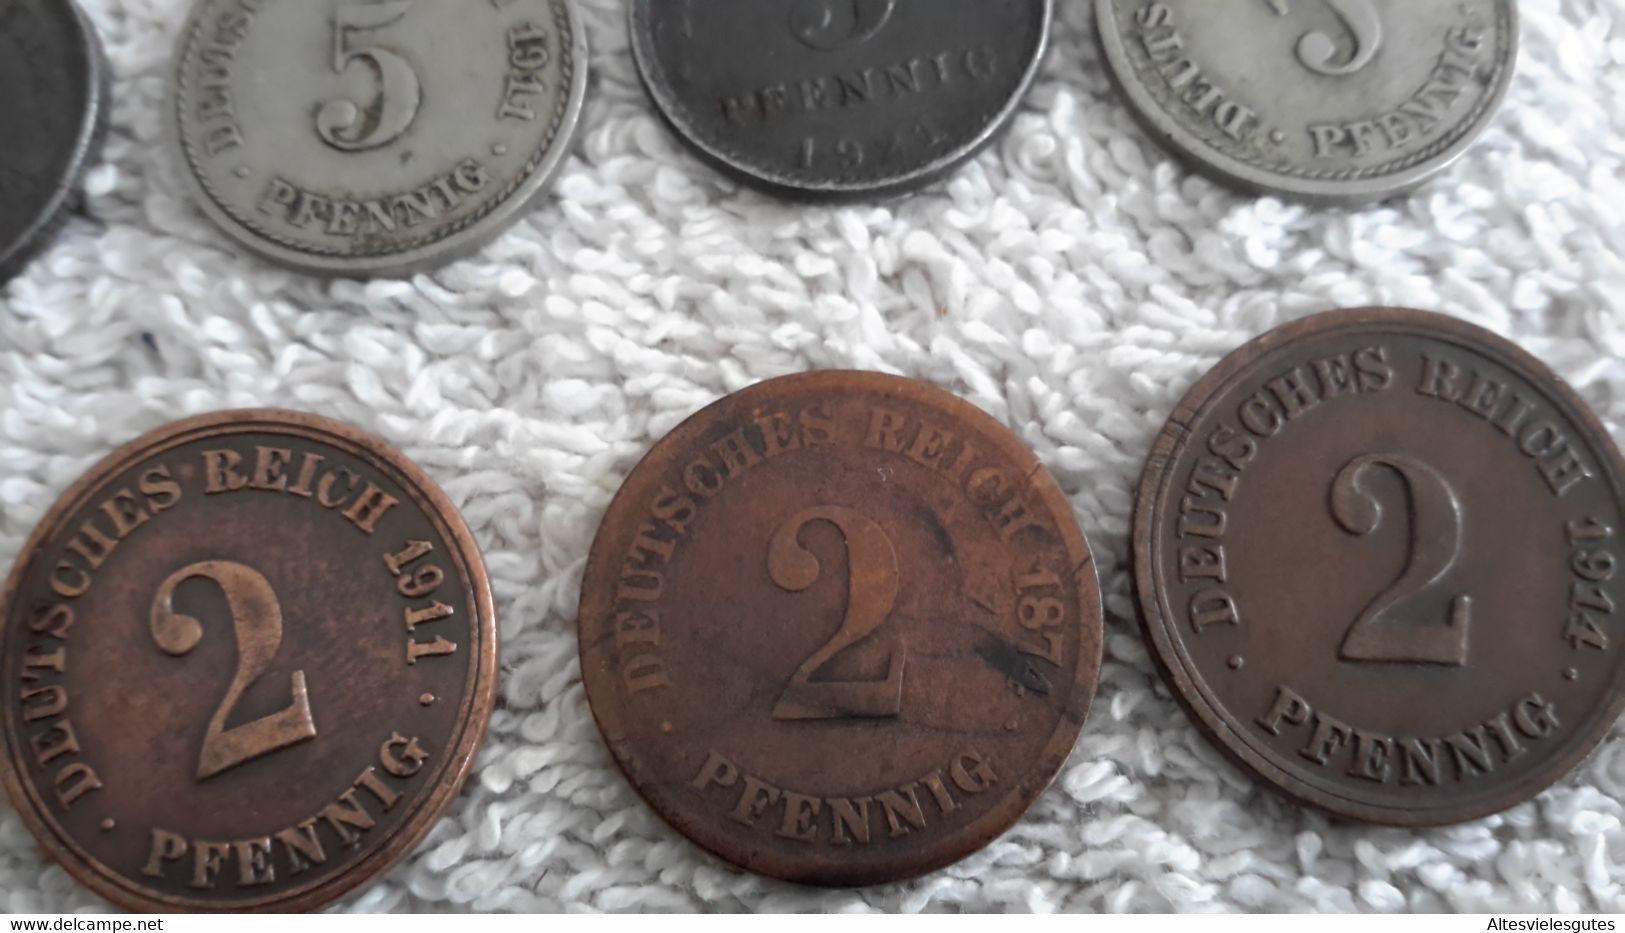 35 x Reichspfennig Deutsches Reich Kaiserreich 10 - 5 - 2 u. 1 Pfennig Stücke